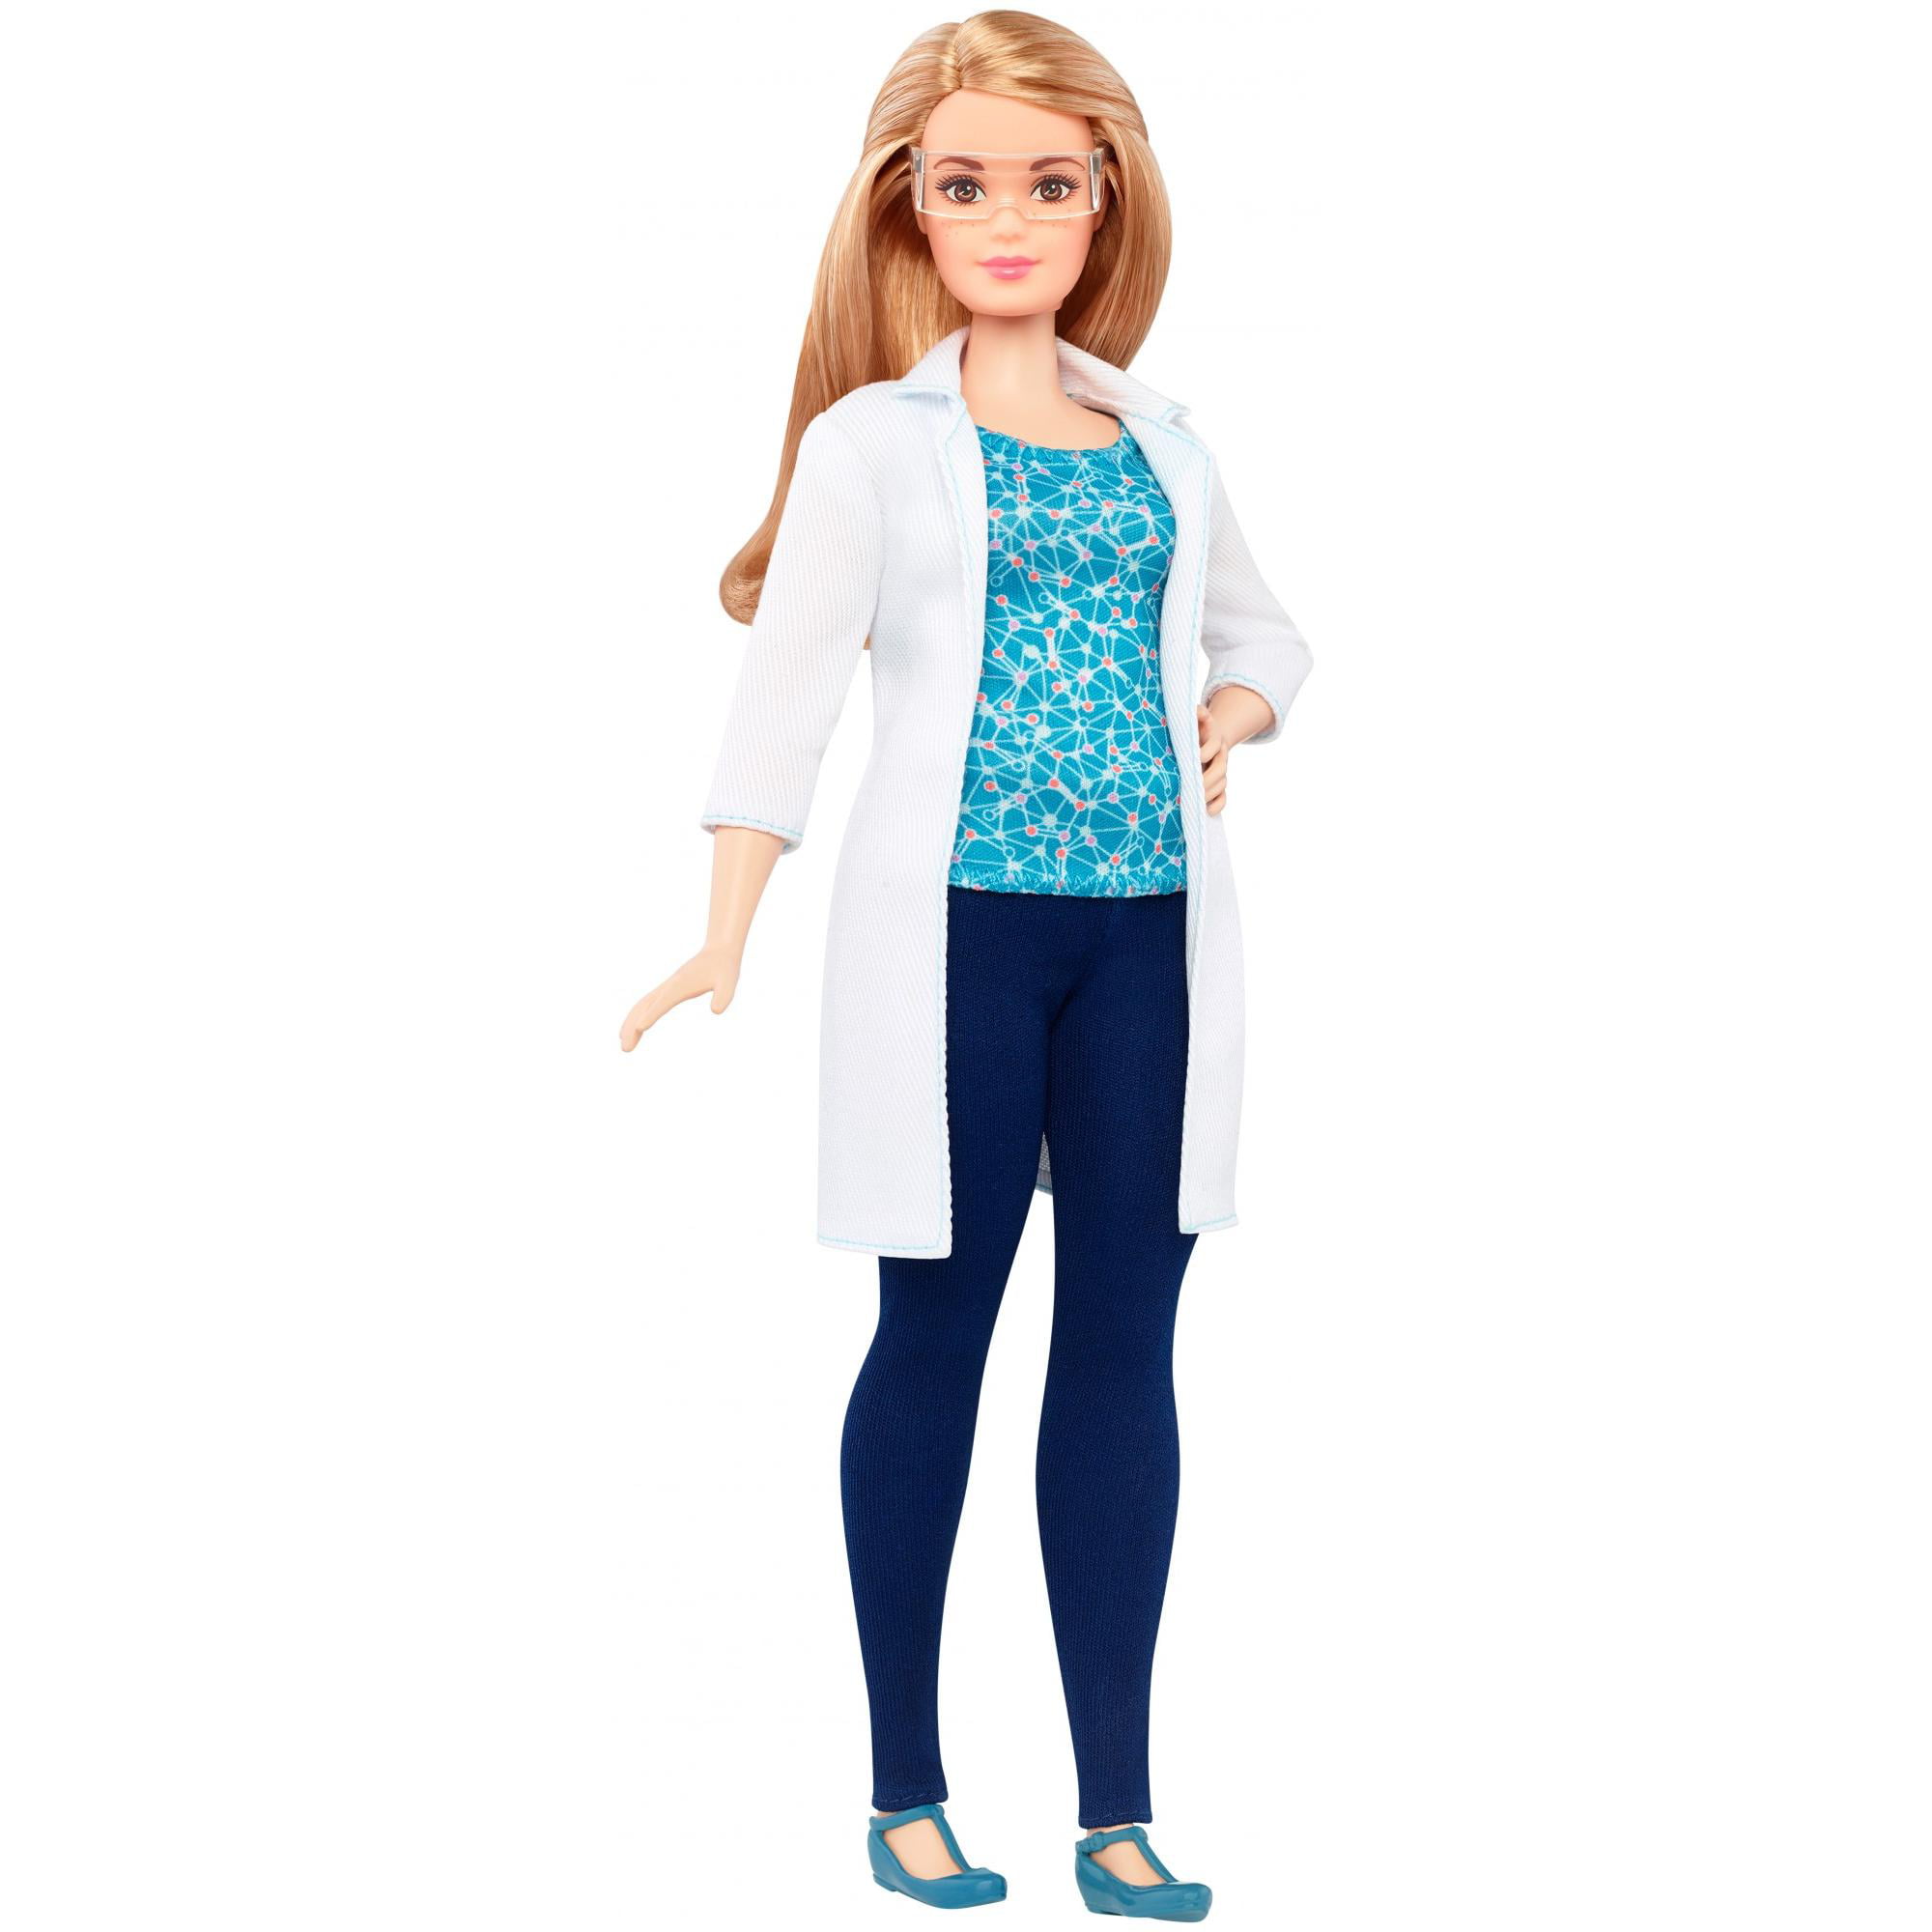 barbie careers scientist doll